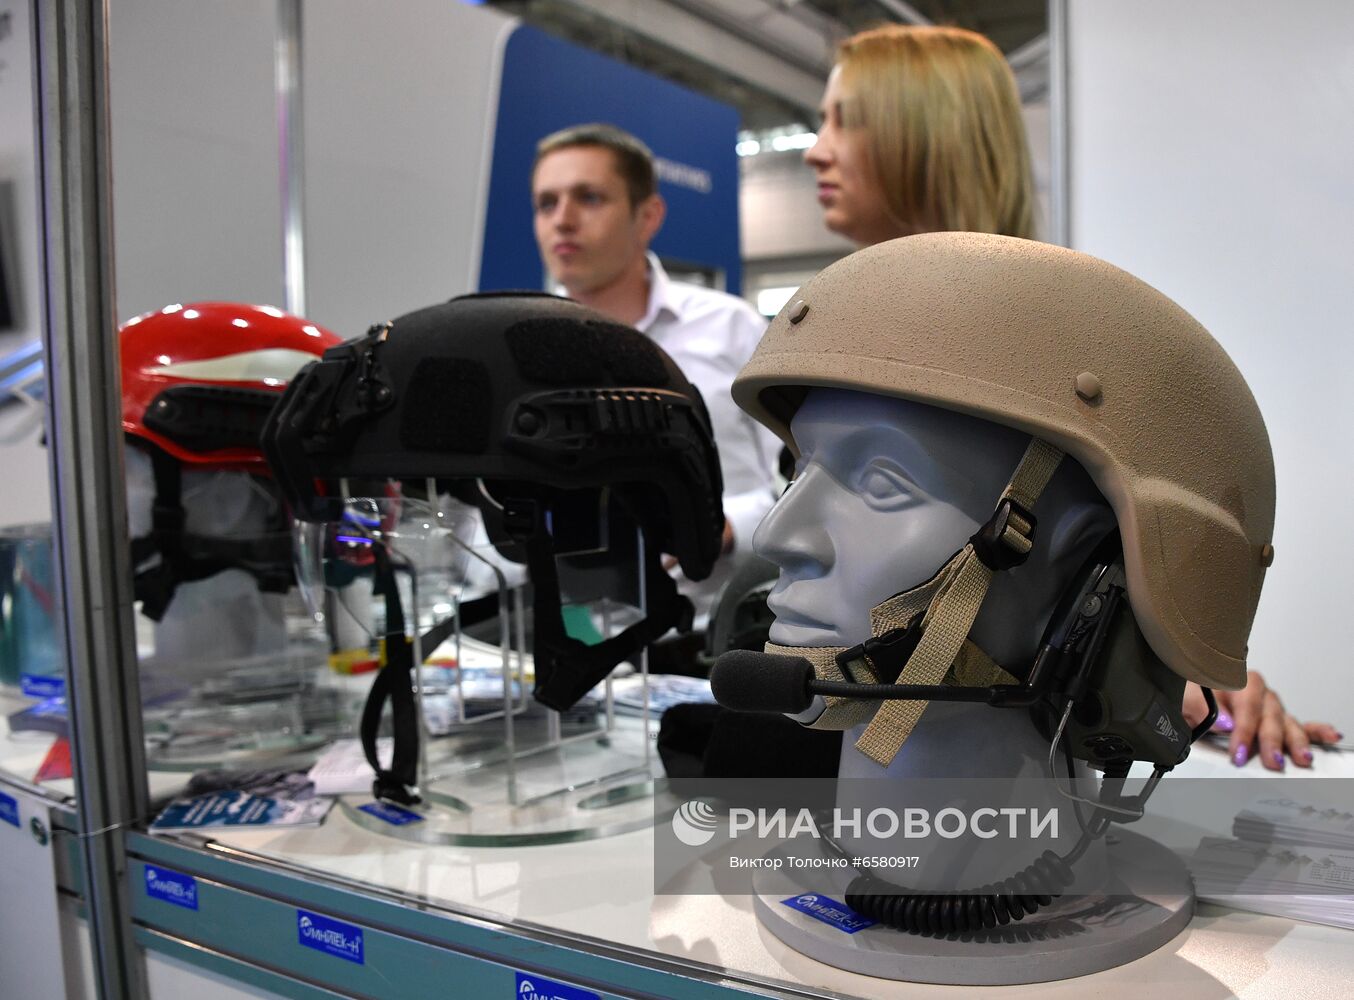 Международная выставка вооружения и военной техники "MILEX-2021" в Минске